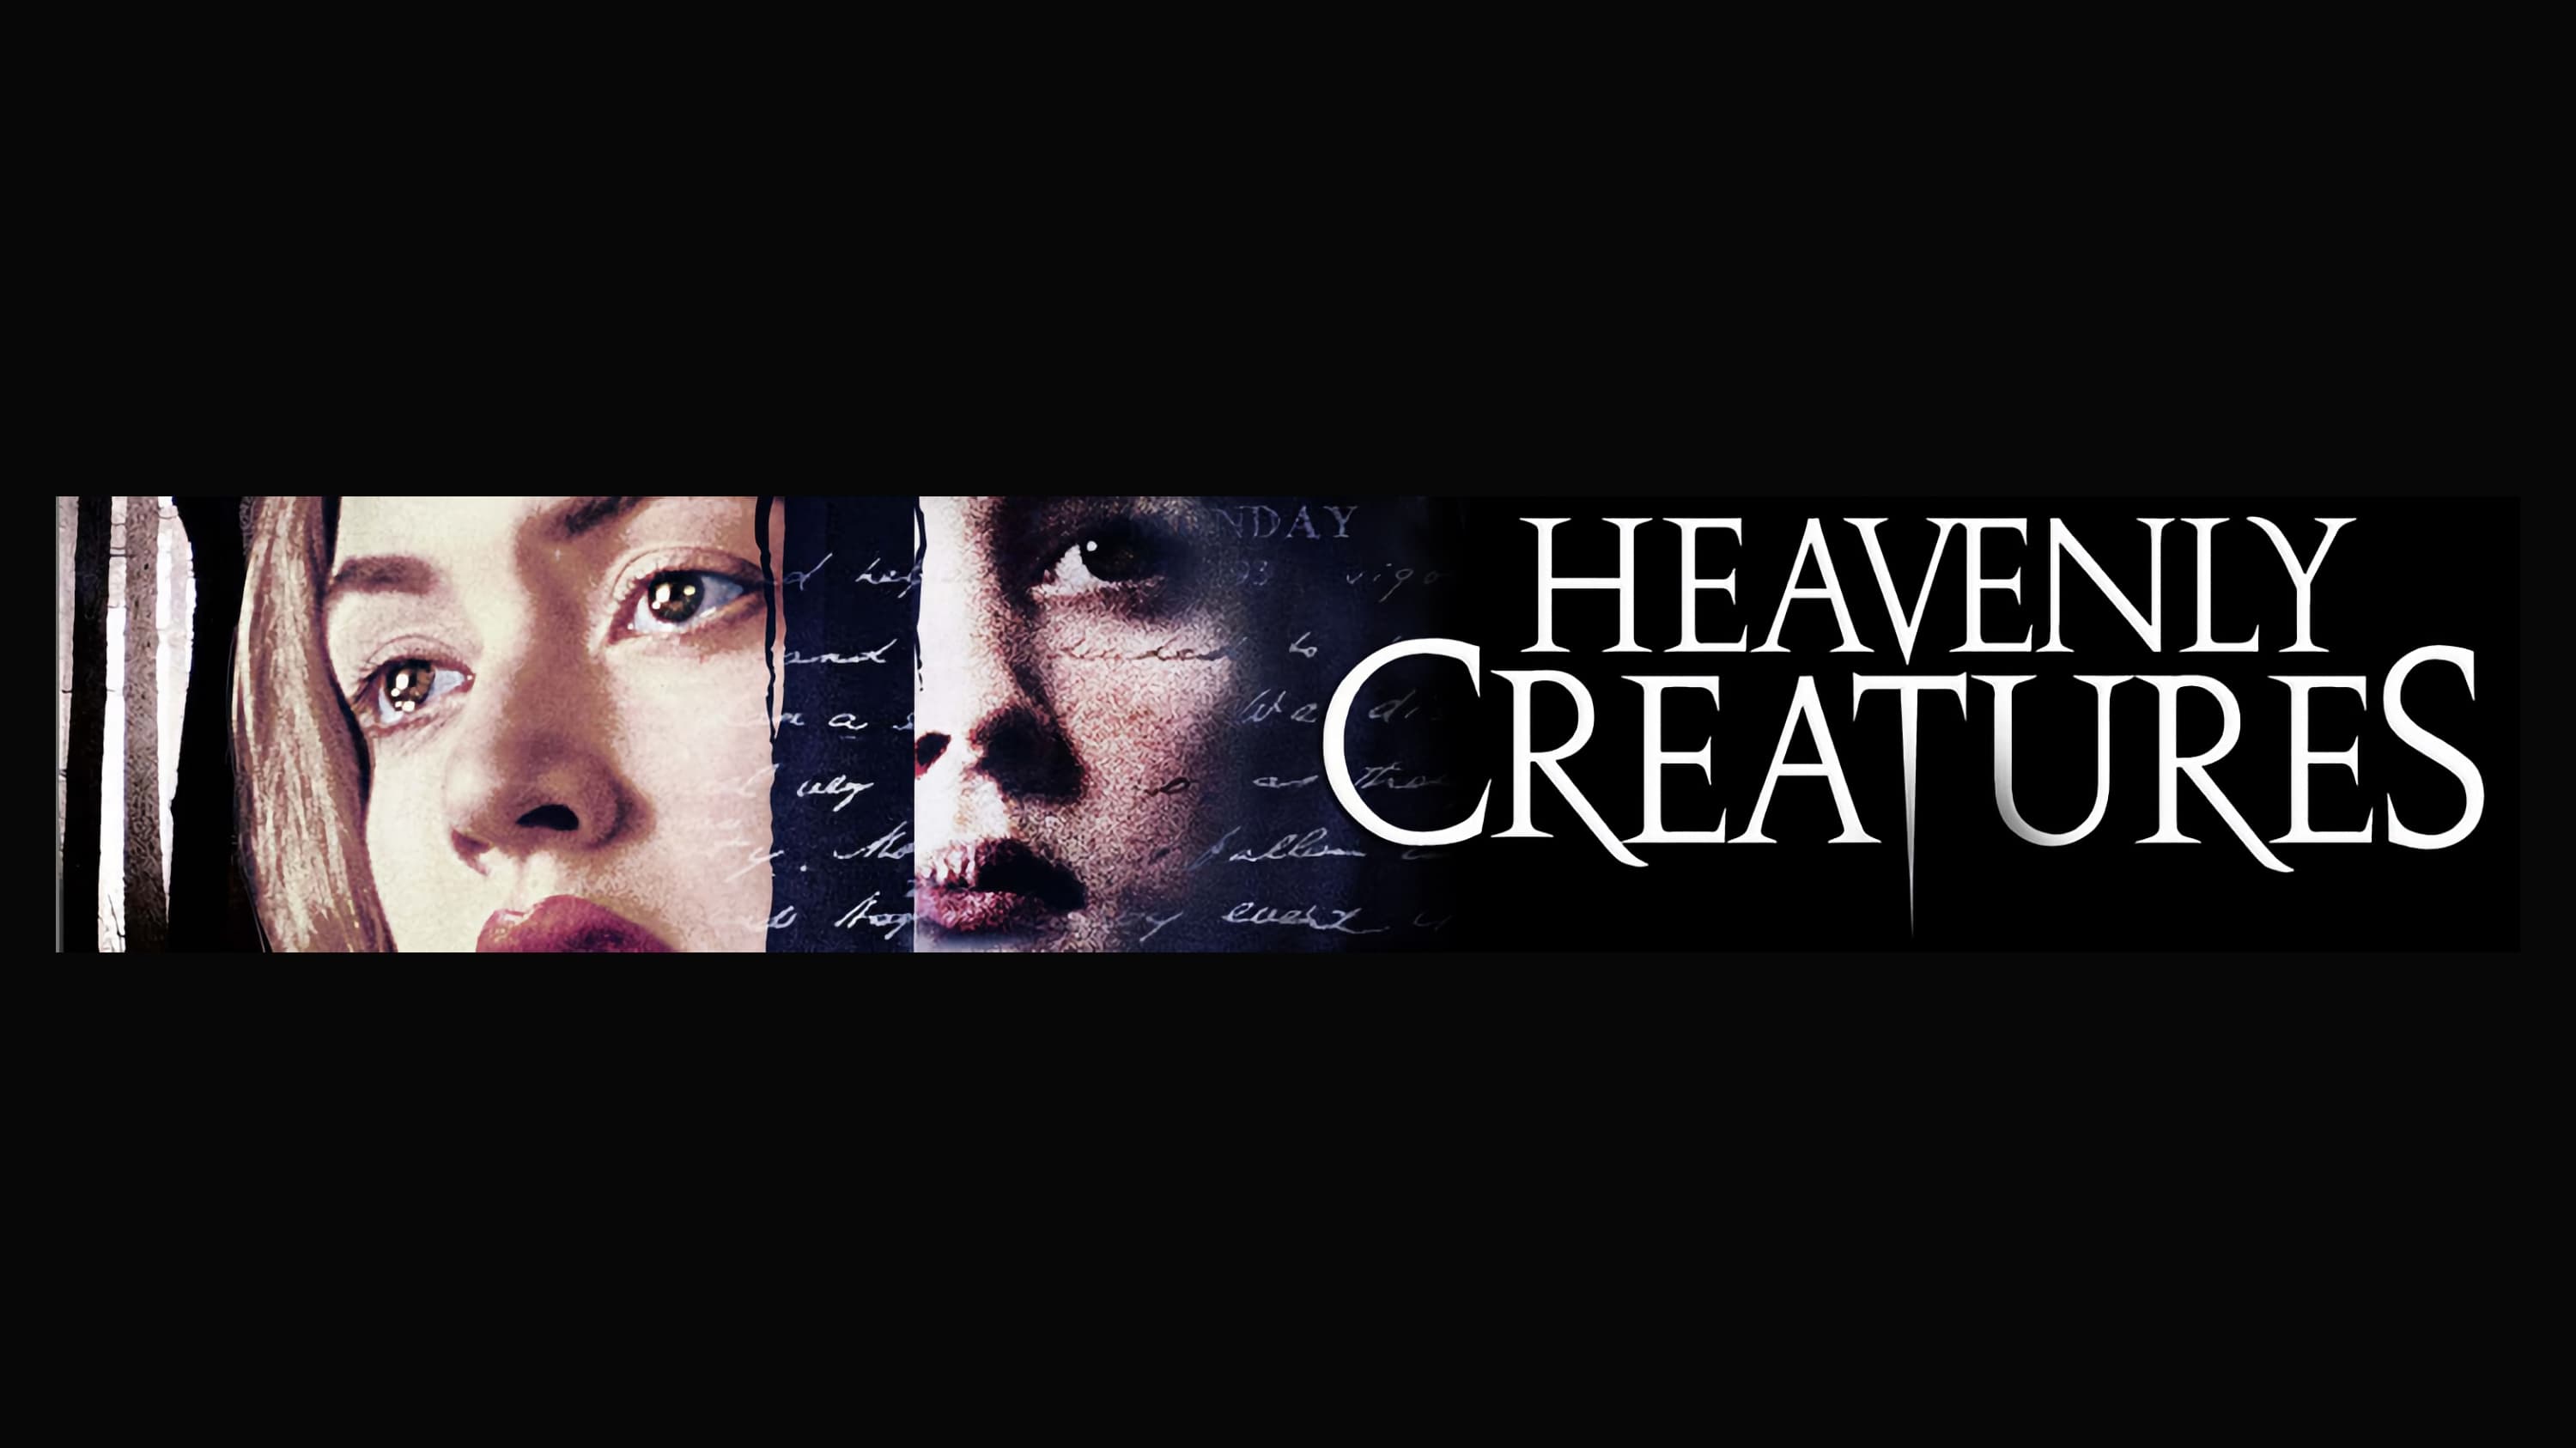 Небесные создания (1994)